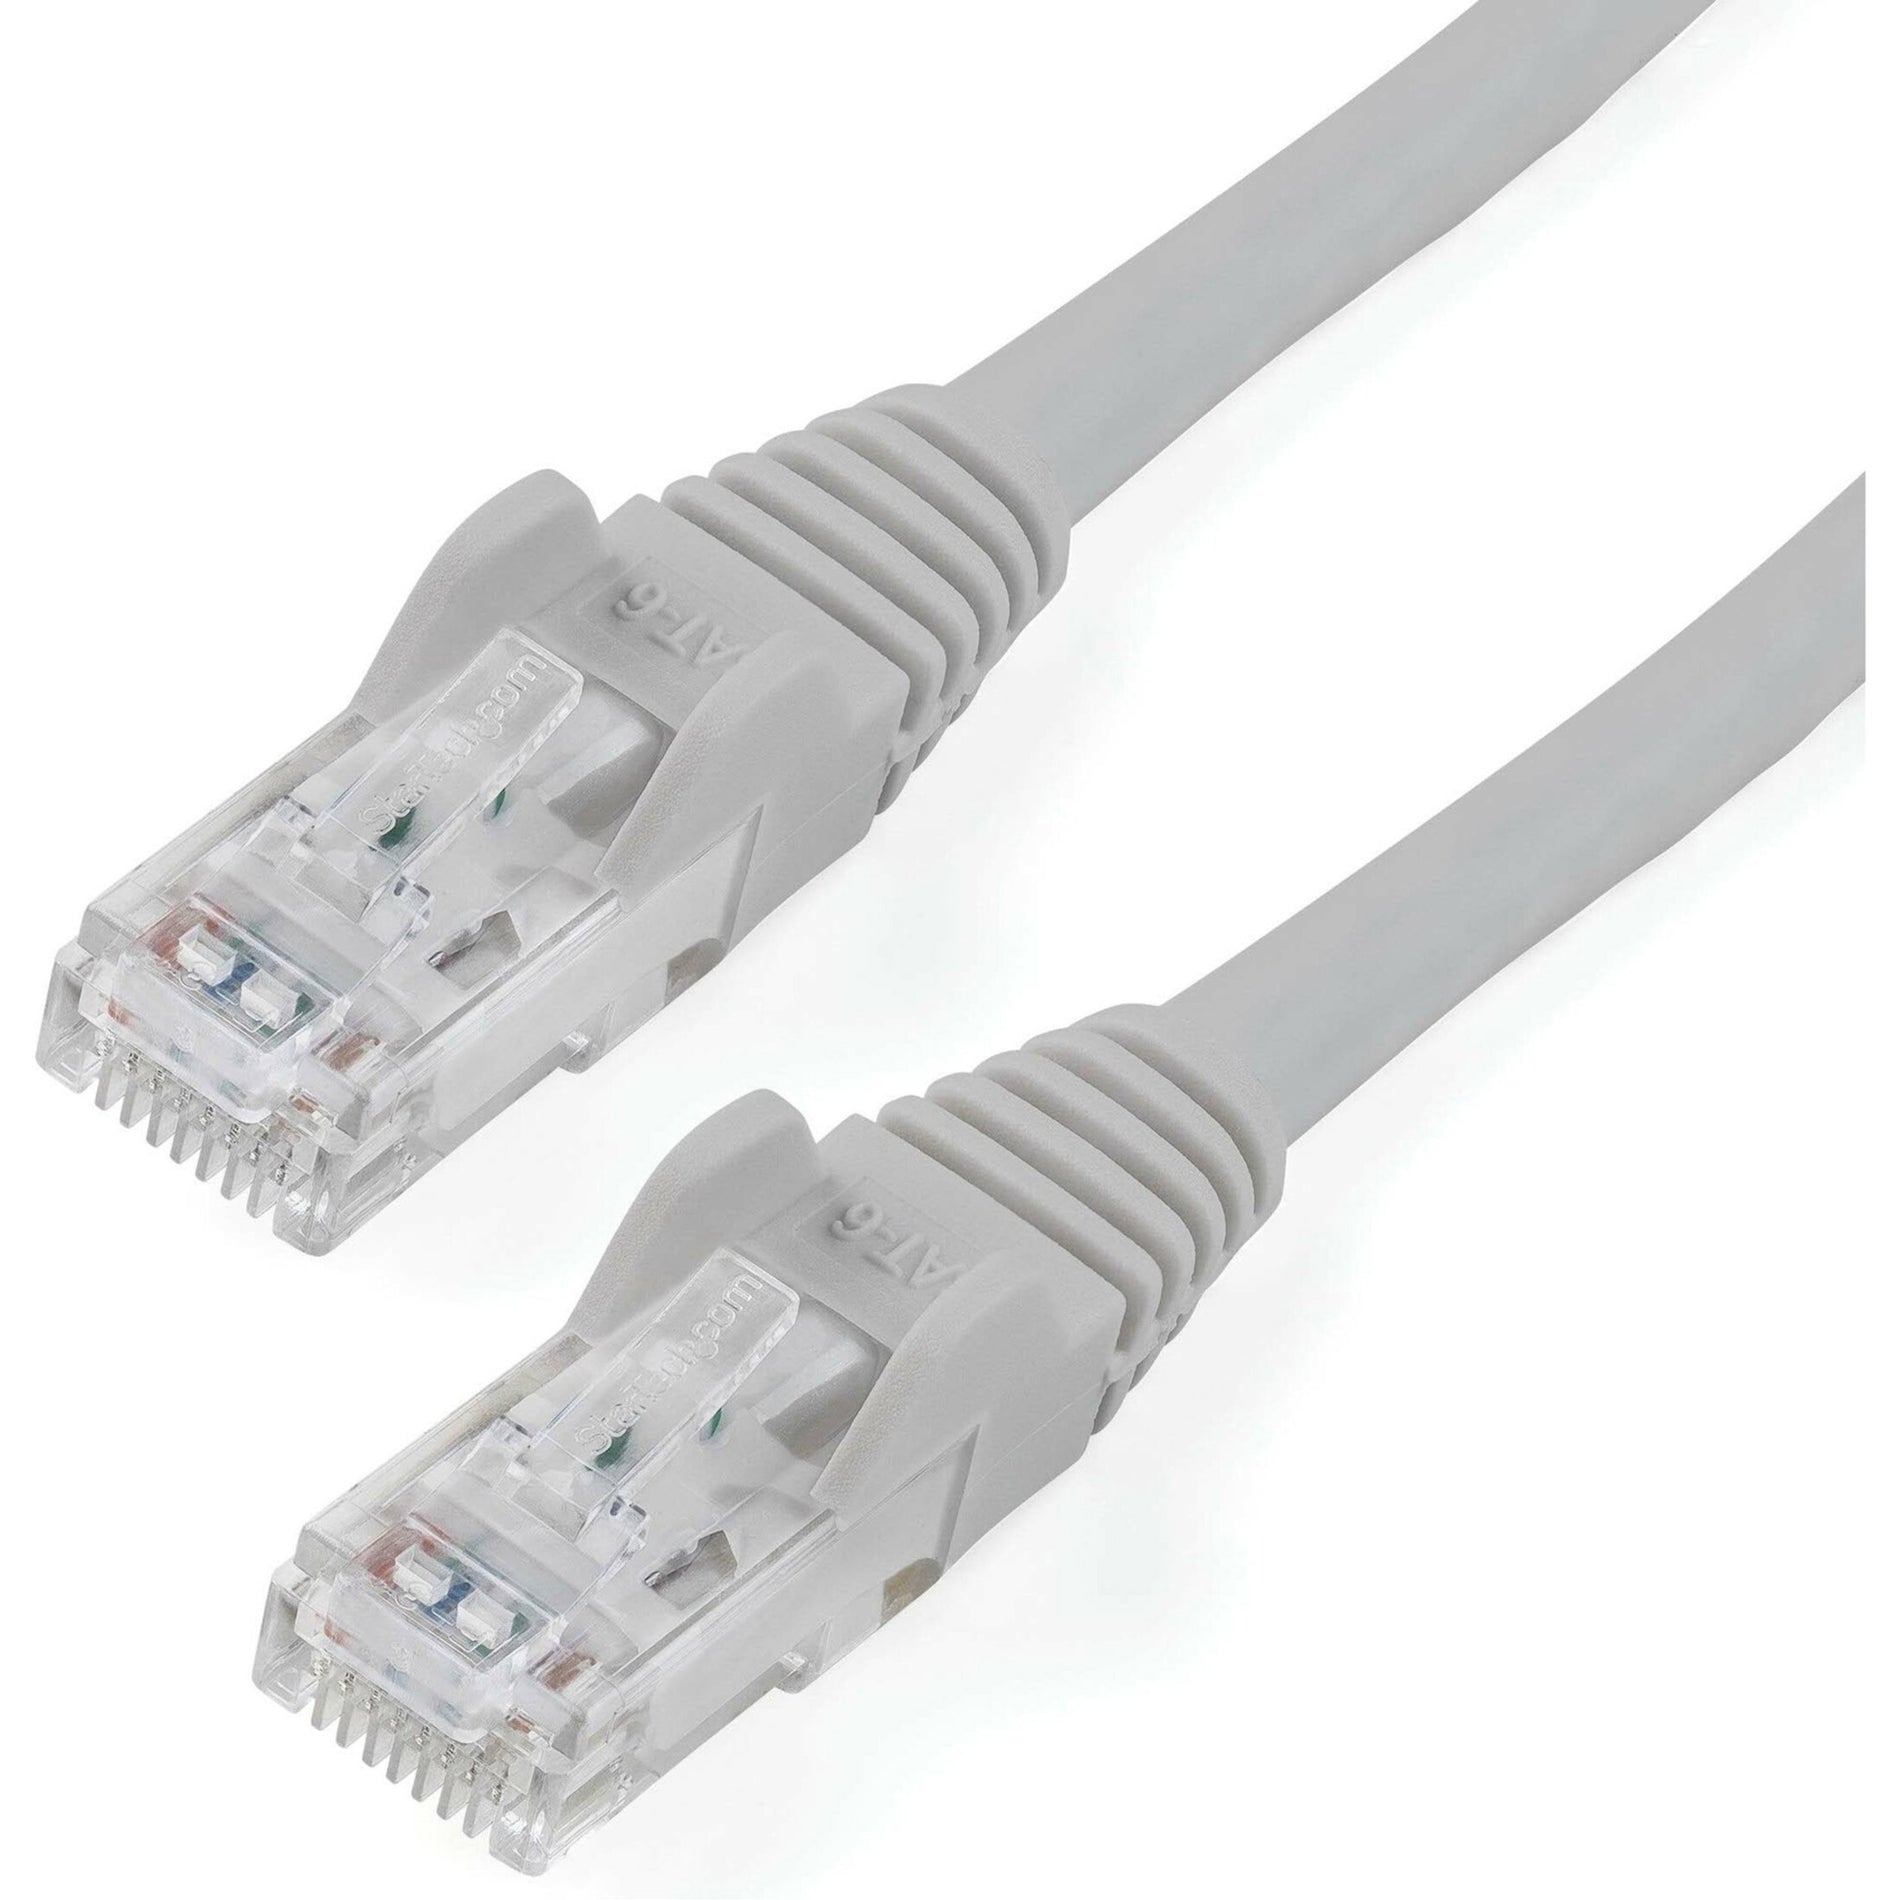 StarTech.com N6PATCH4GR Cable de conexión Cat6 4 pies Cable Ethernet gris Conectores RJ45 sin enganches Marca: StarTech.com